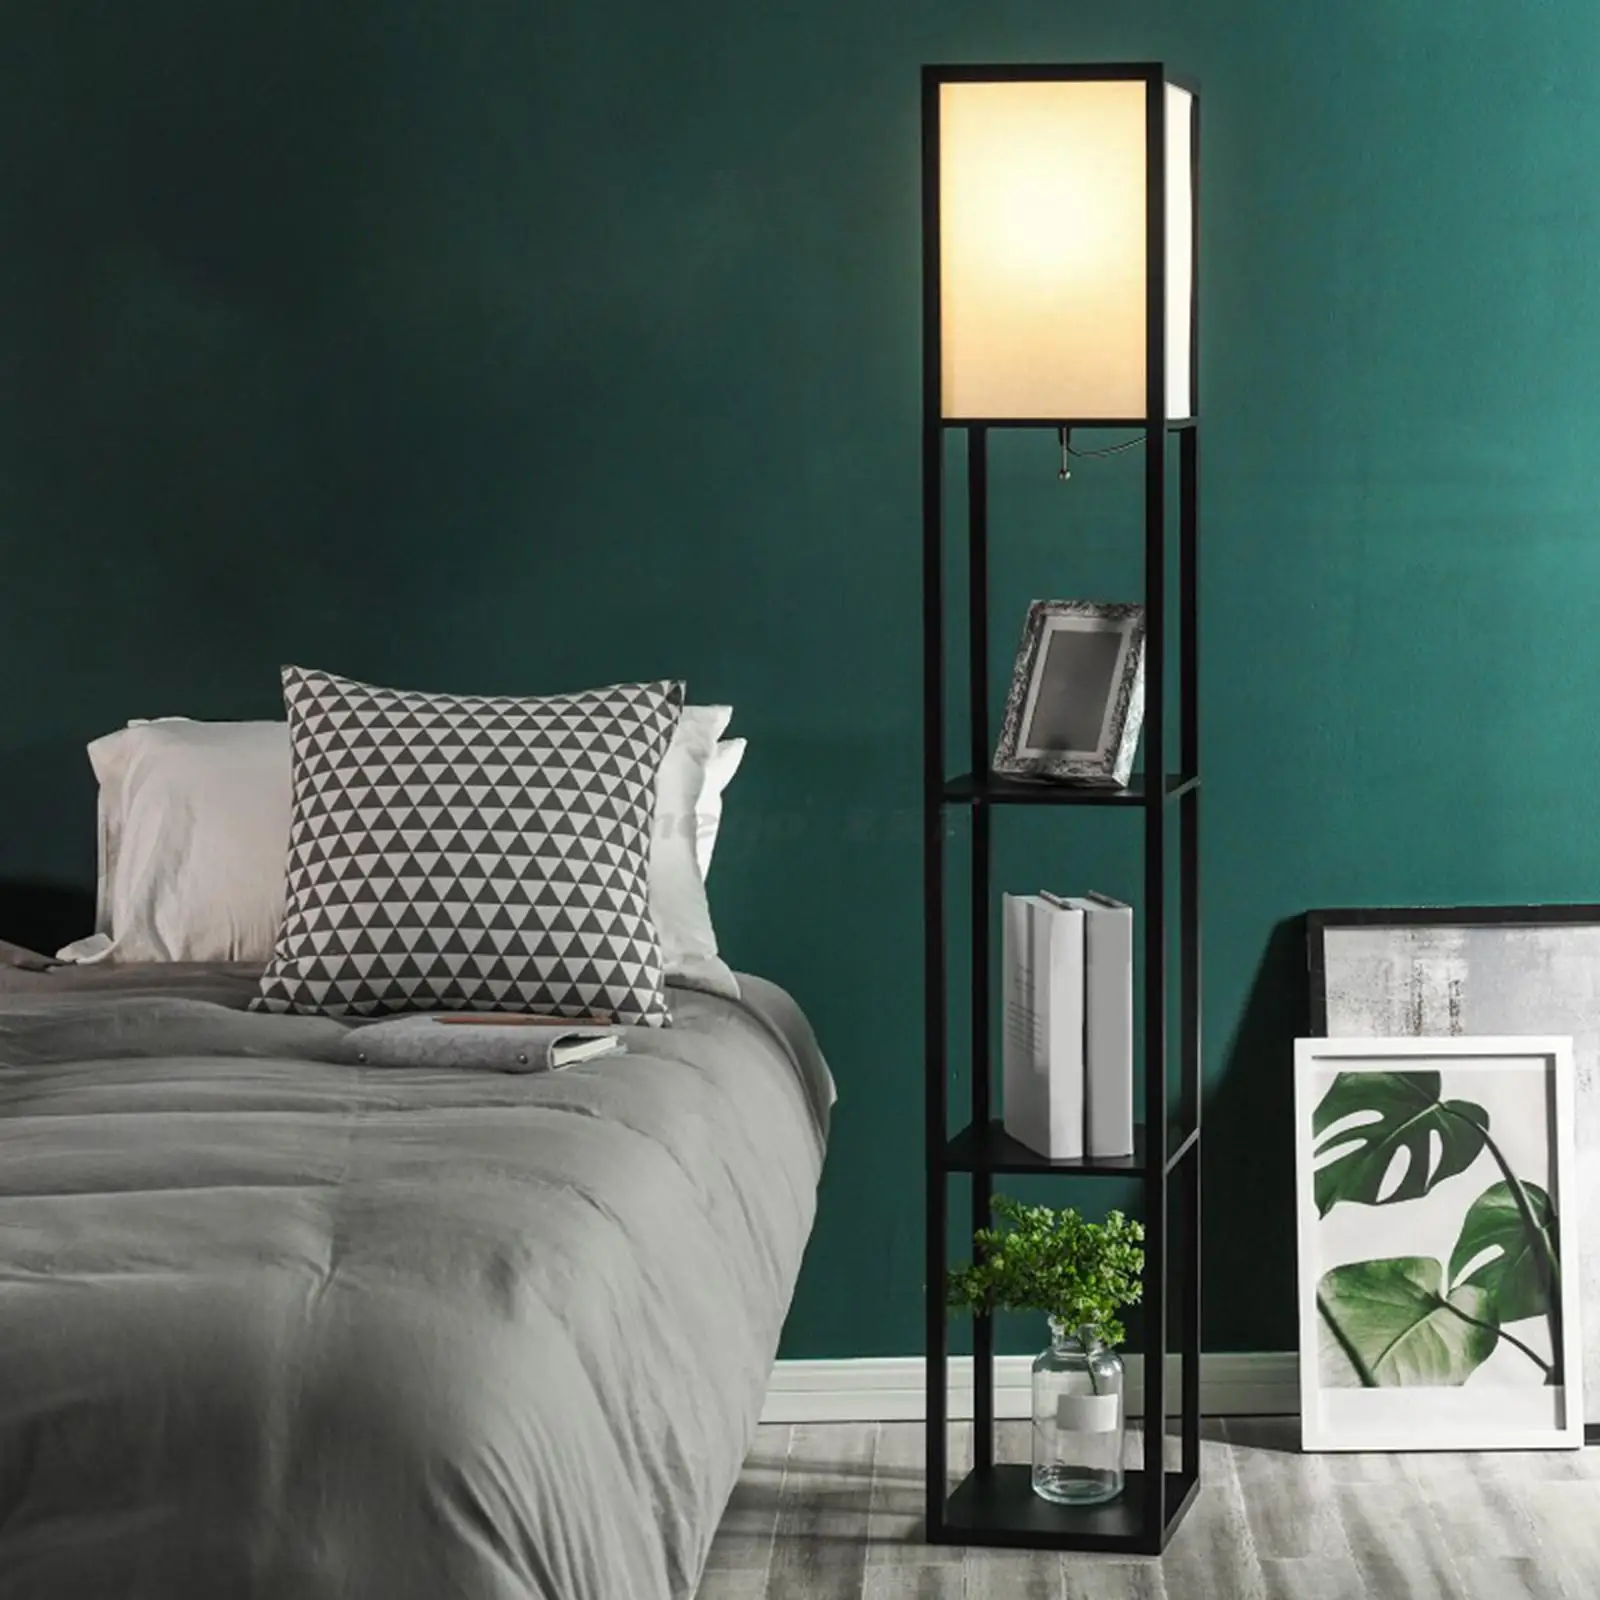 Shelf Floor Lamp with 3 Display Storage Shelves Organizer Simple Standing 4 Tier for NightStand Bedside Reading Indoor Bedroom